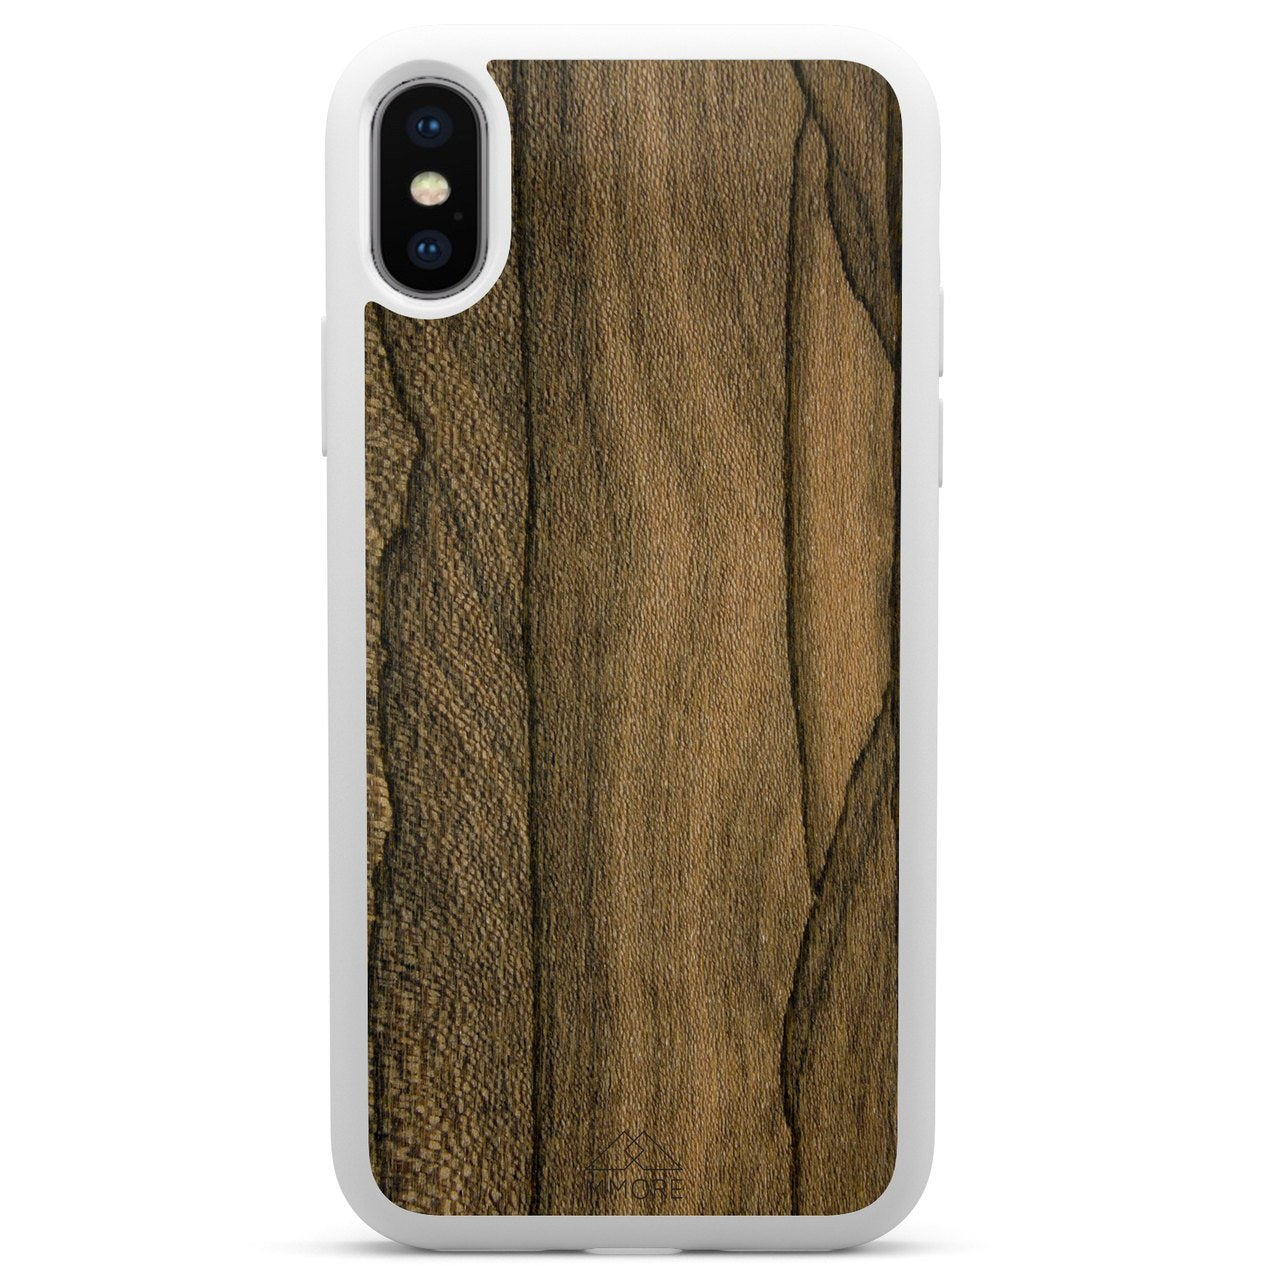 Ziricote Rare Wood Phone Case